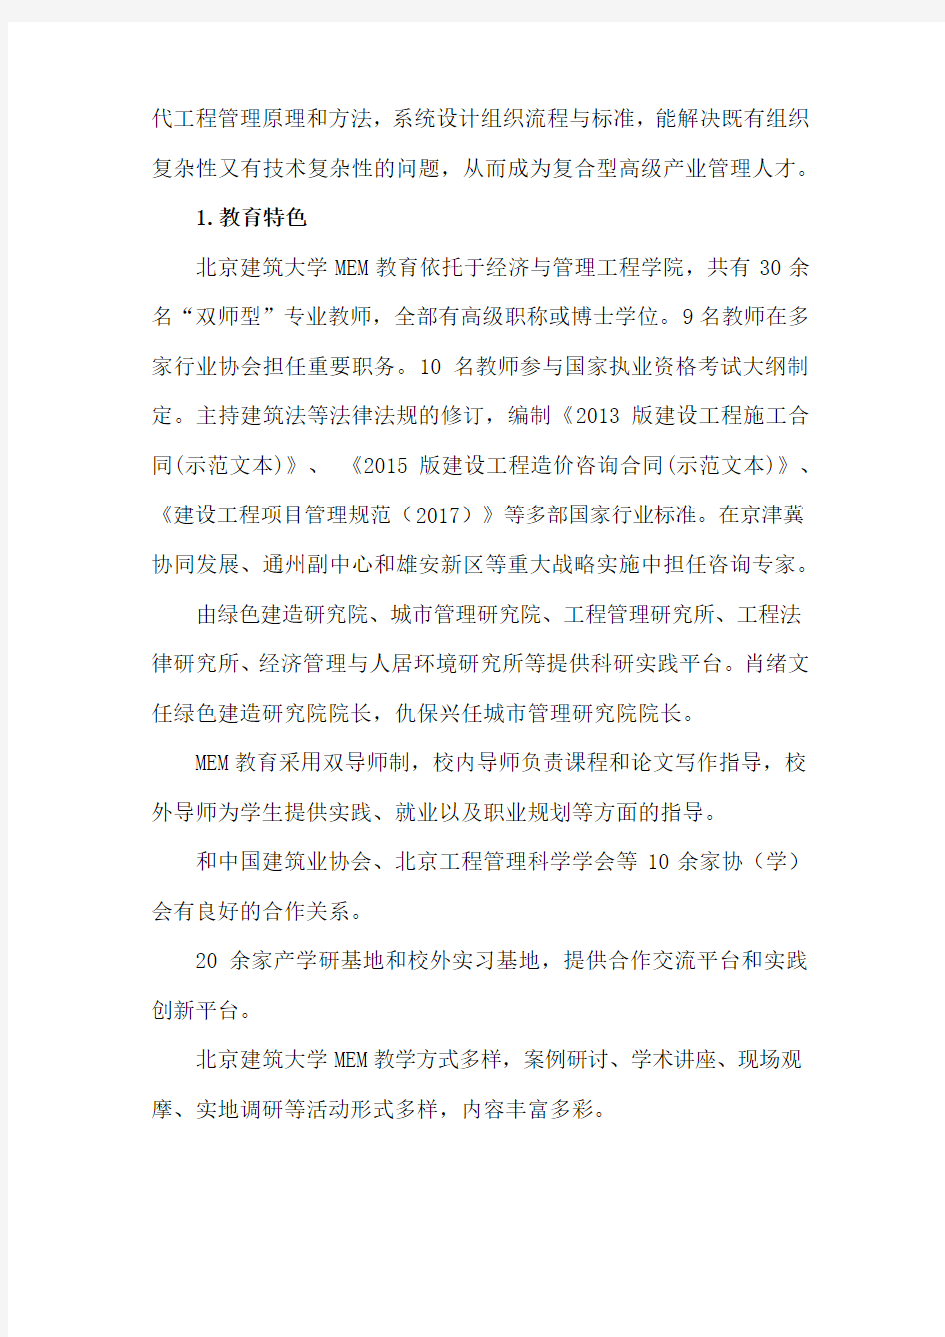 北京建筑大学2019年工程管理硕士(MEM)招生简章